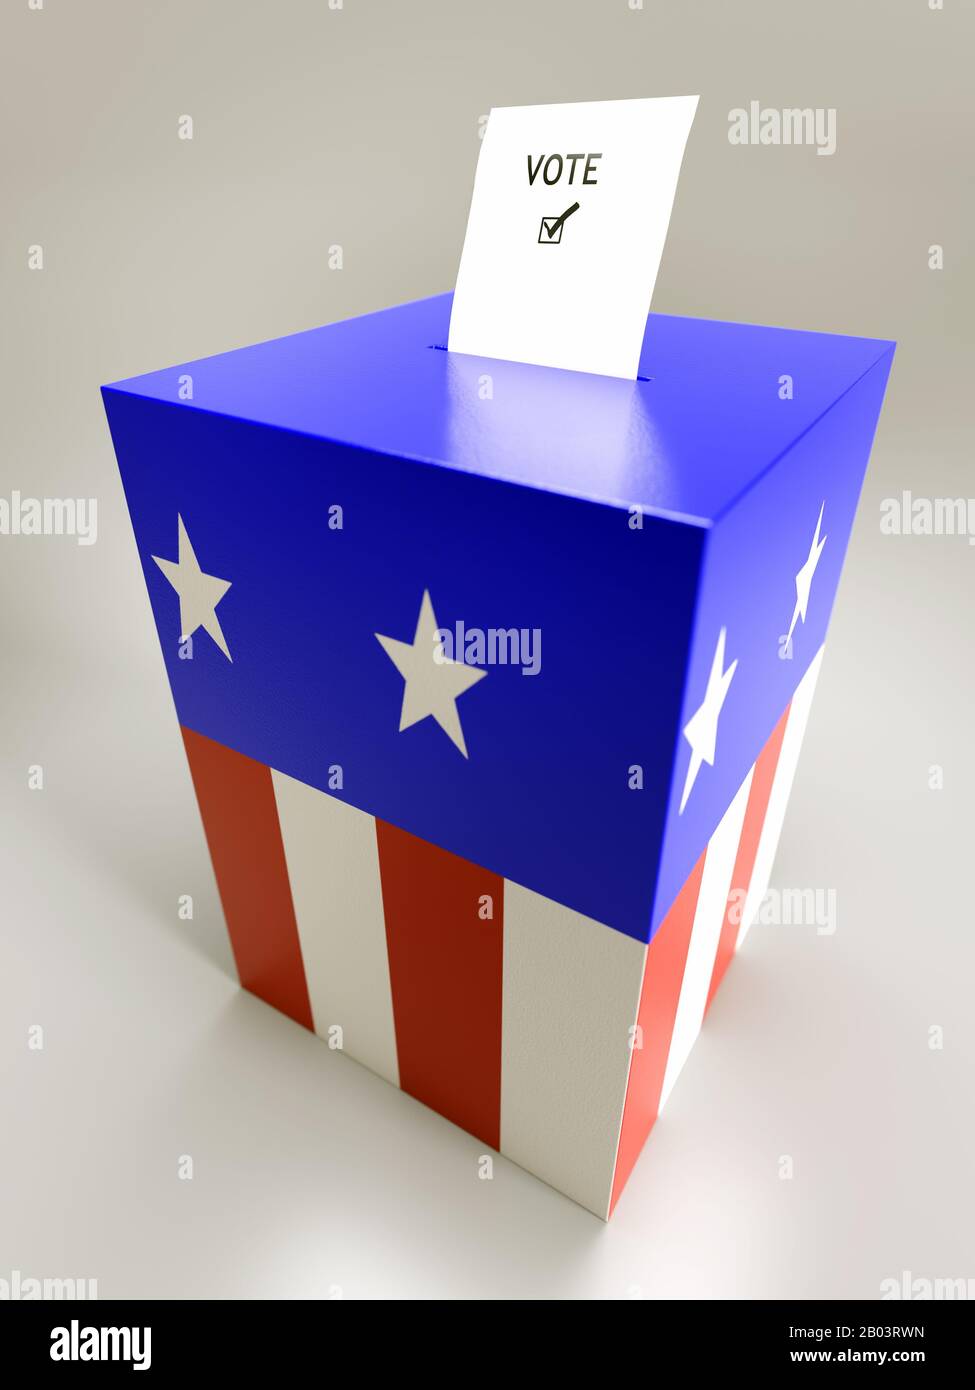 Wahlkarte halb in Wahlurne eingesetzt, die in amerikanischen Flaggenstars und Streifenfarben über hellgrauem Hintergrund gemalt wurden Stockfoto